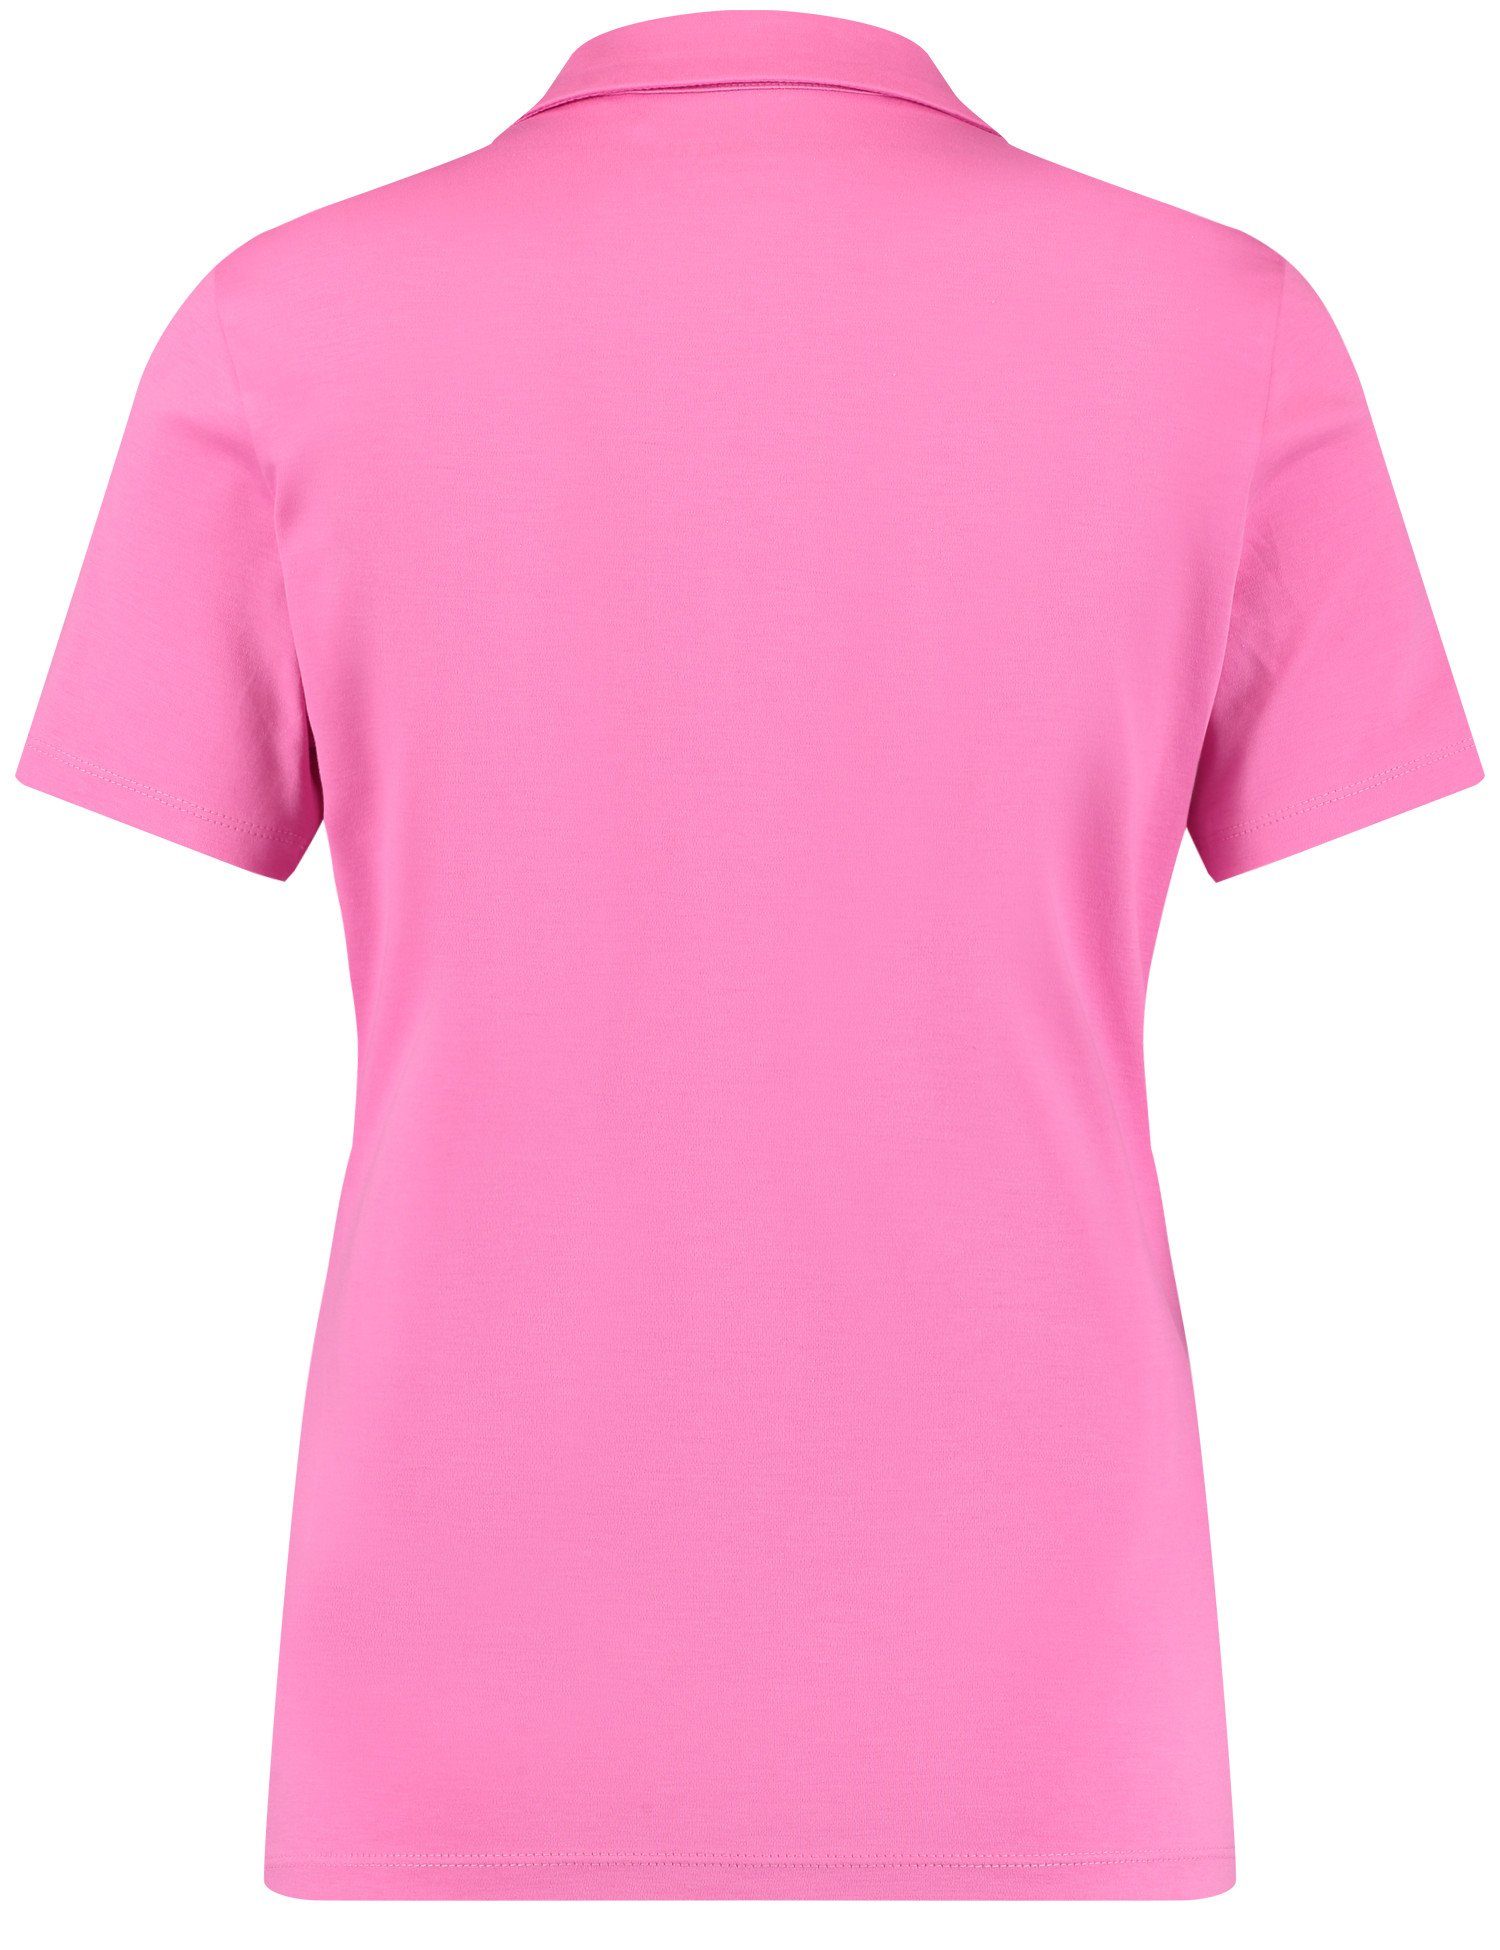 Soft Poloshirt GERRY Pink Poloshirt Kurzarm WEBER